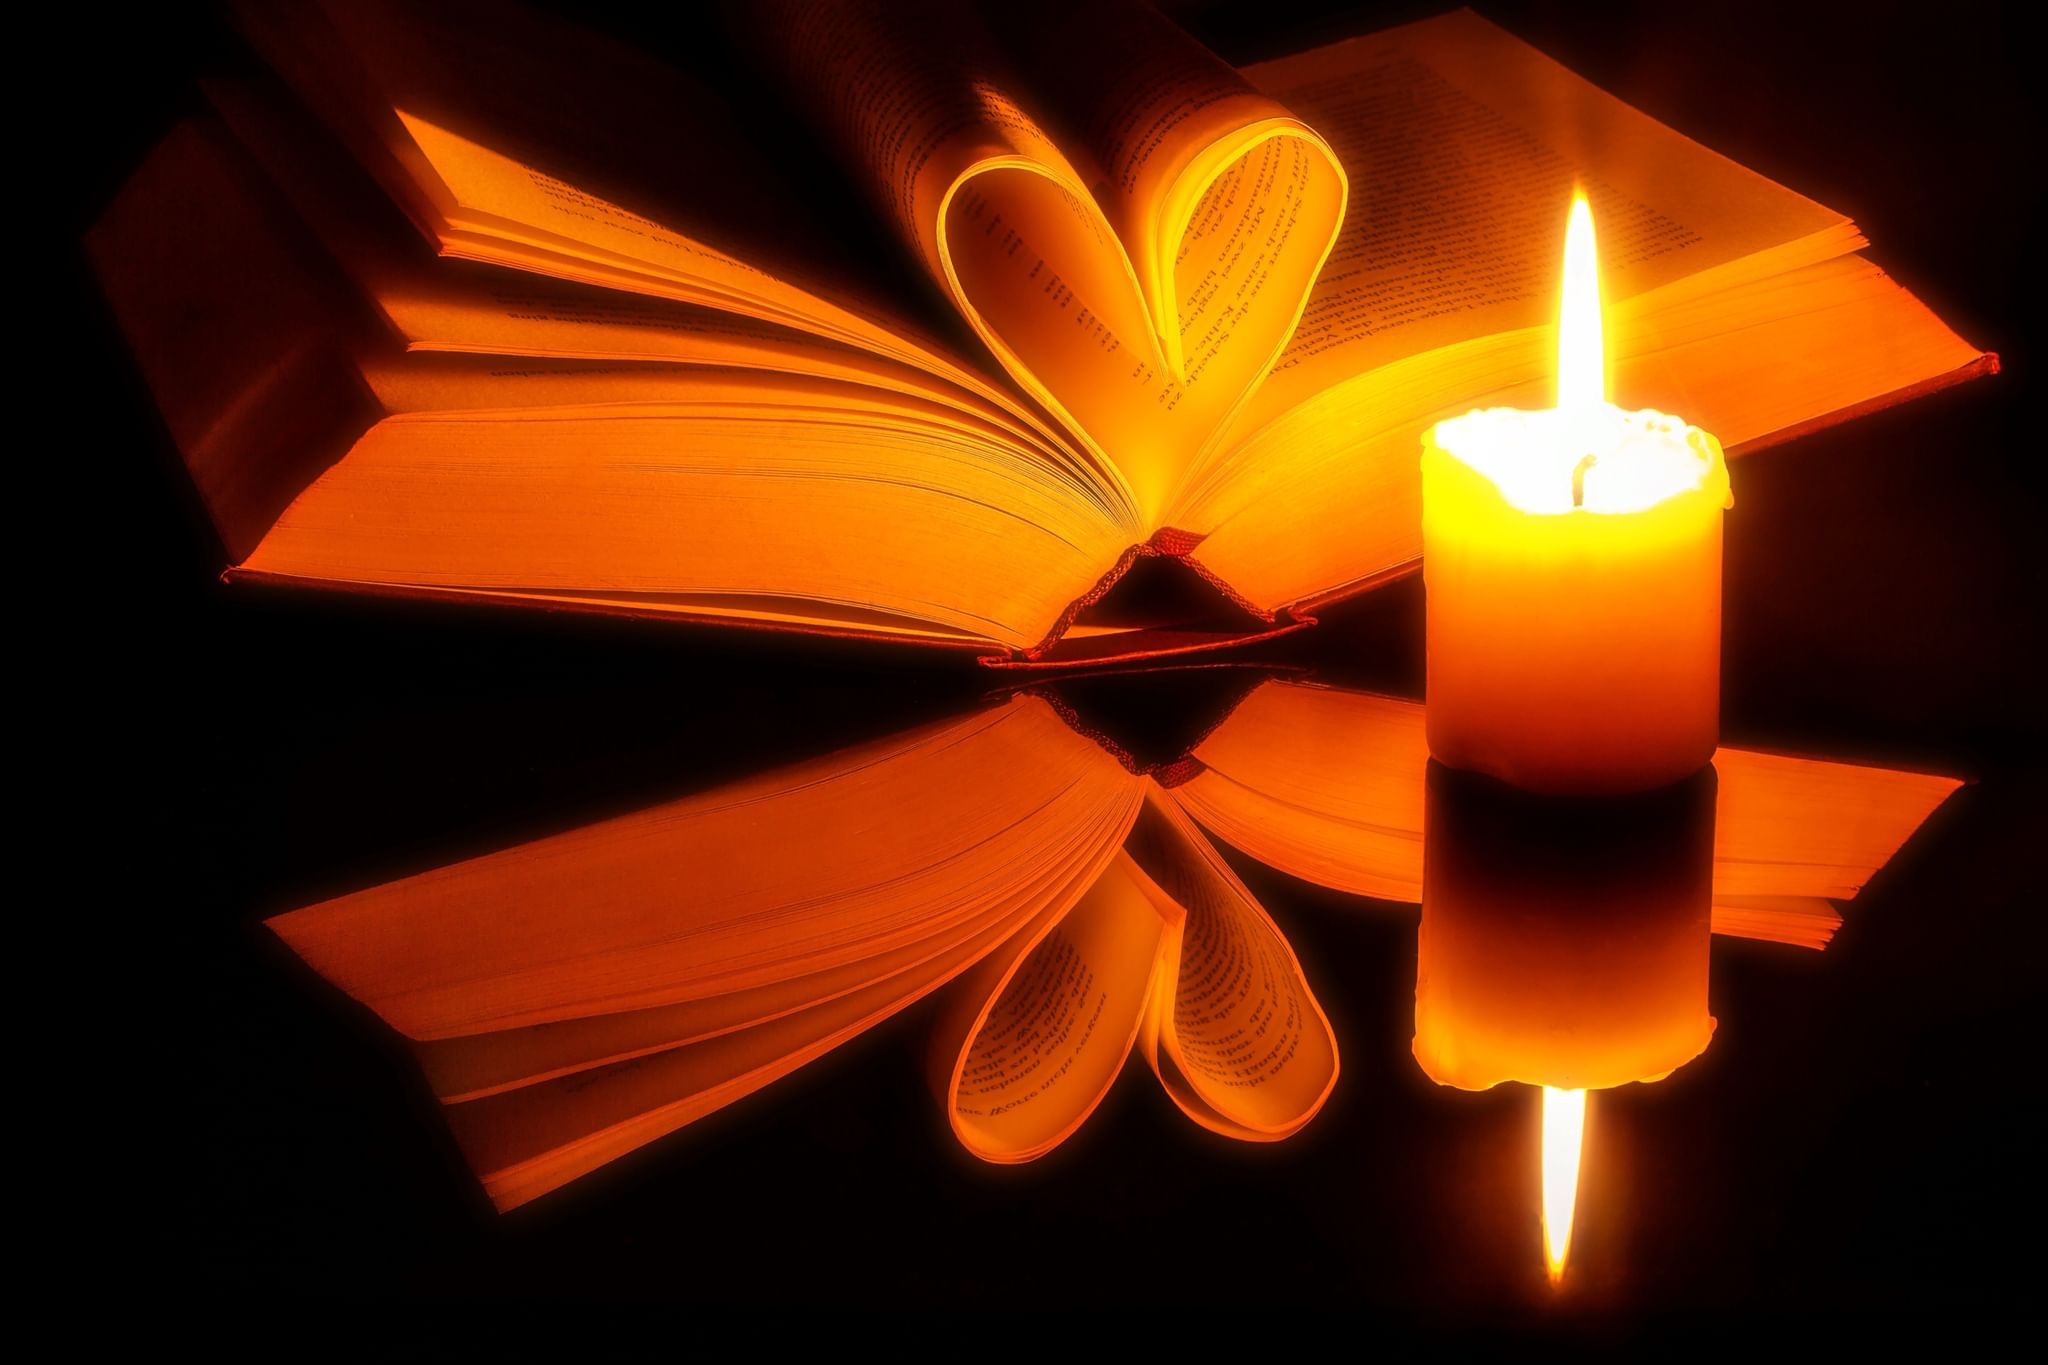 Книга и свеча